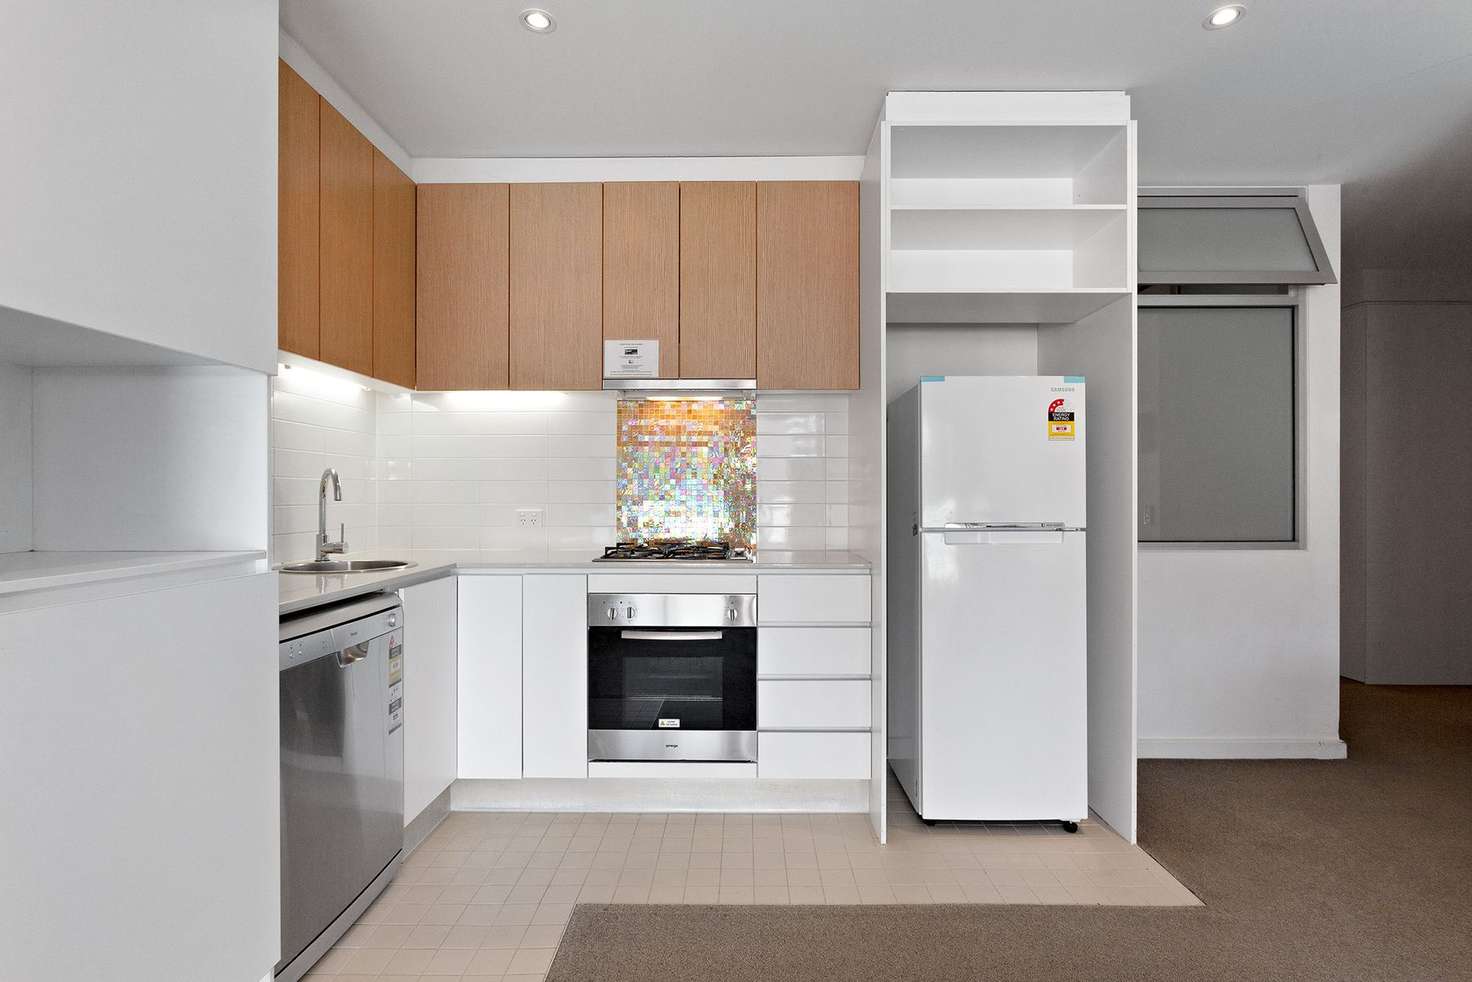 Main view of Homely apartment listing, 714/185 Morphett Street, Adelaide SA 5000